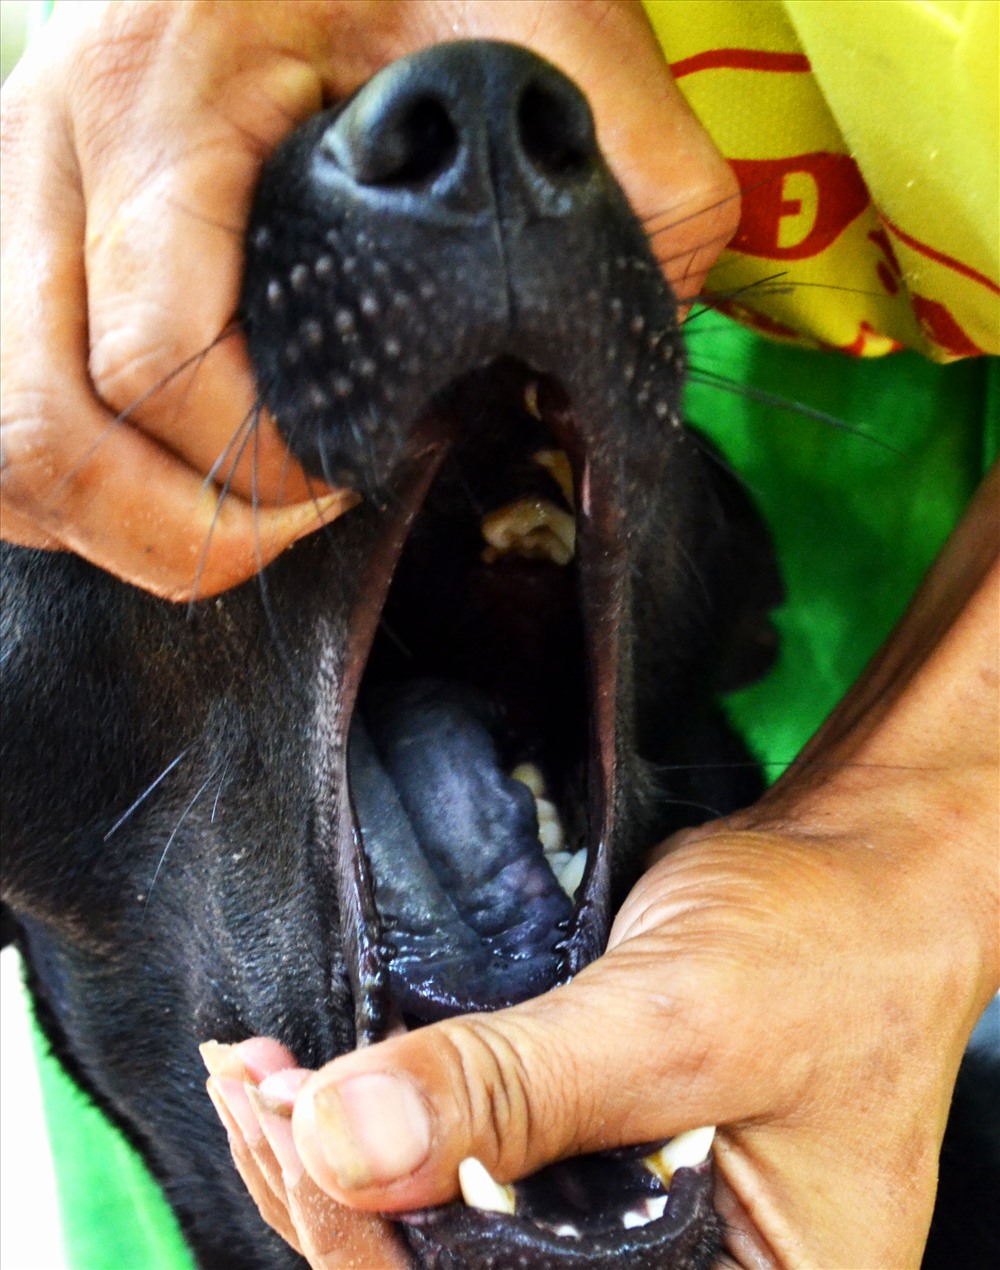 Đặc biệt lưỡi chó Phú Quốc thường có đốm đen, hoặc đen tuyền thế này. (Ảnh: Lục Tùng) 